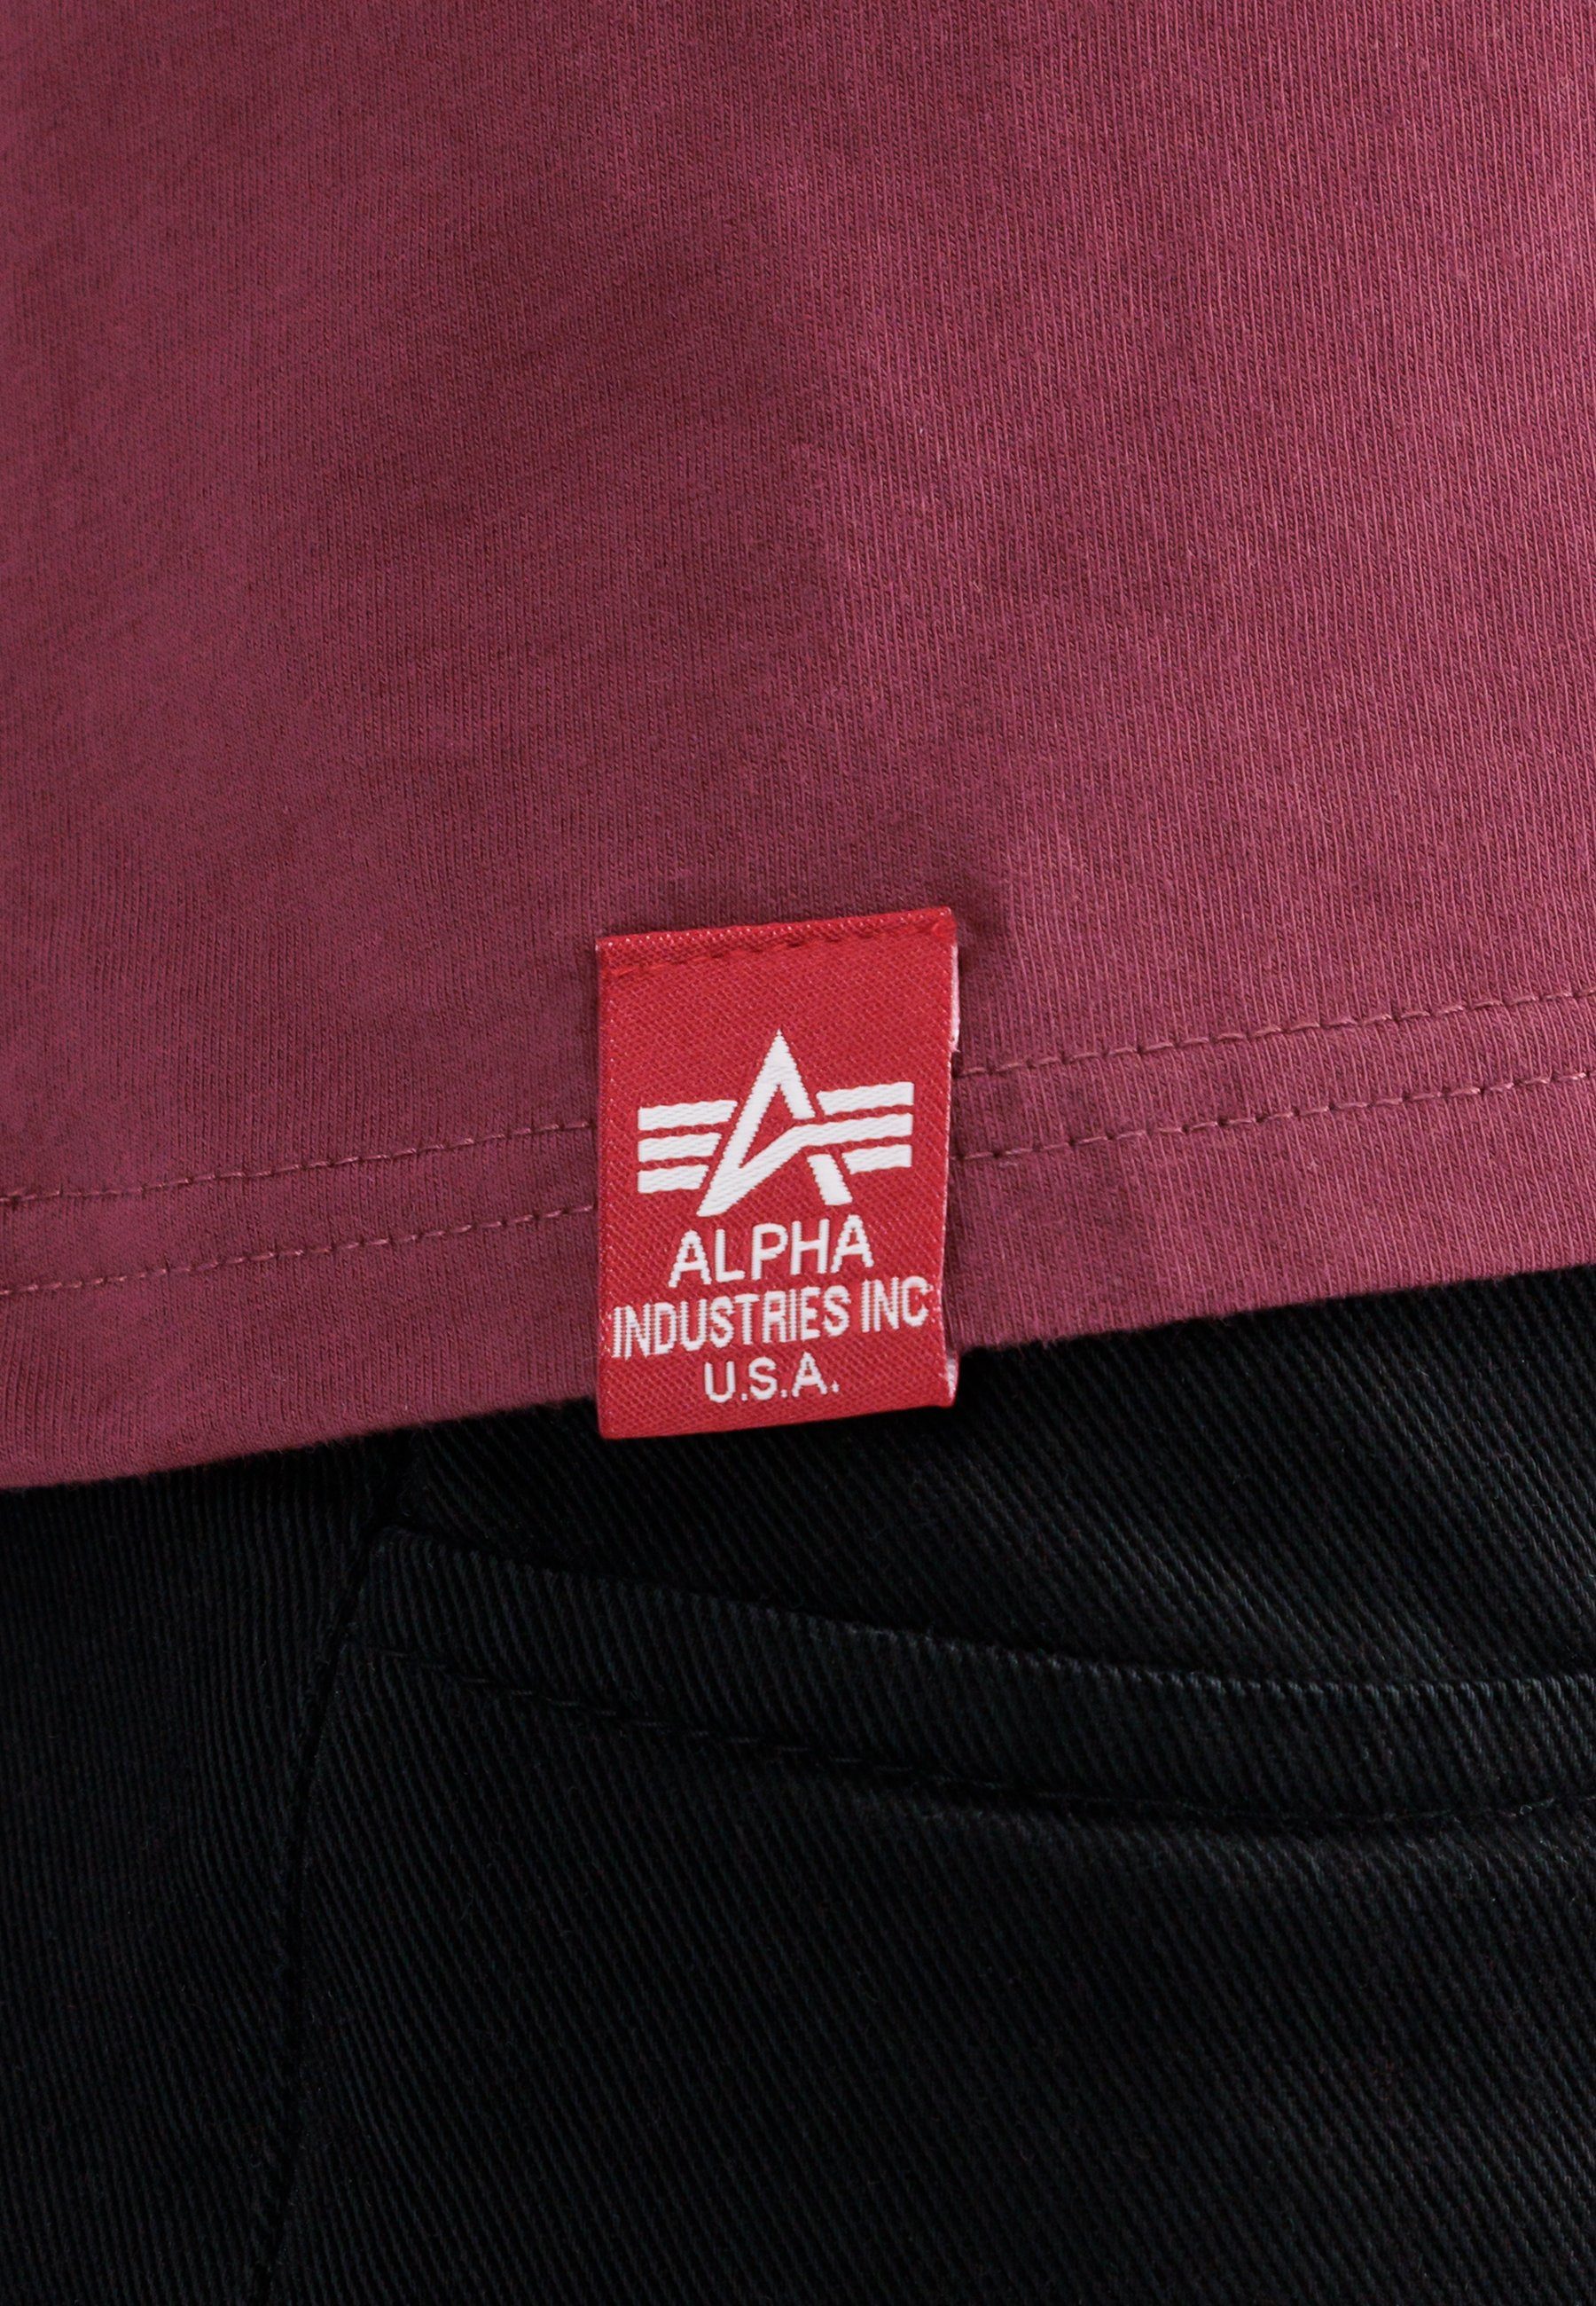 Alpha T-Shirt T-Shirt Dark - Side T-Shirts Industries Alpha burgundy Industries Men